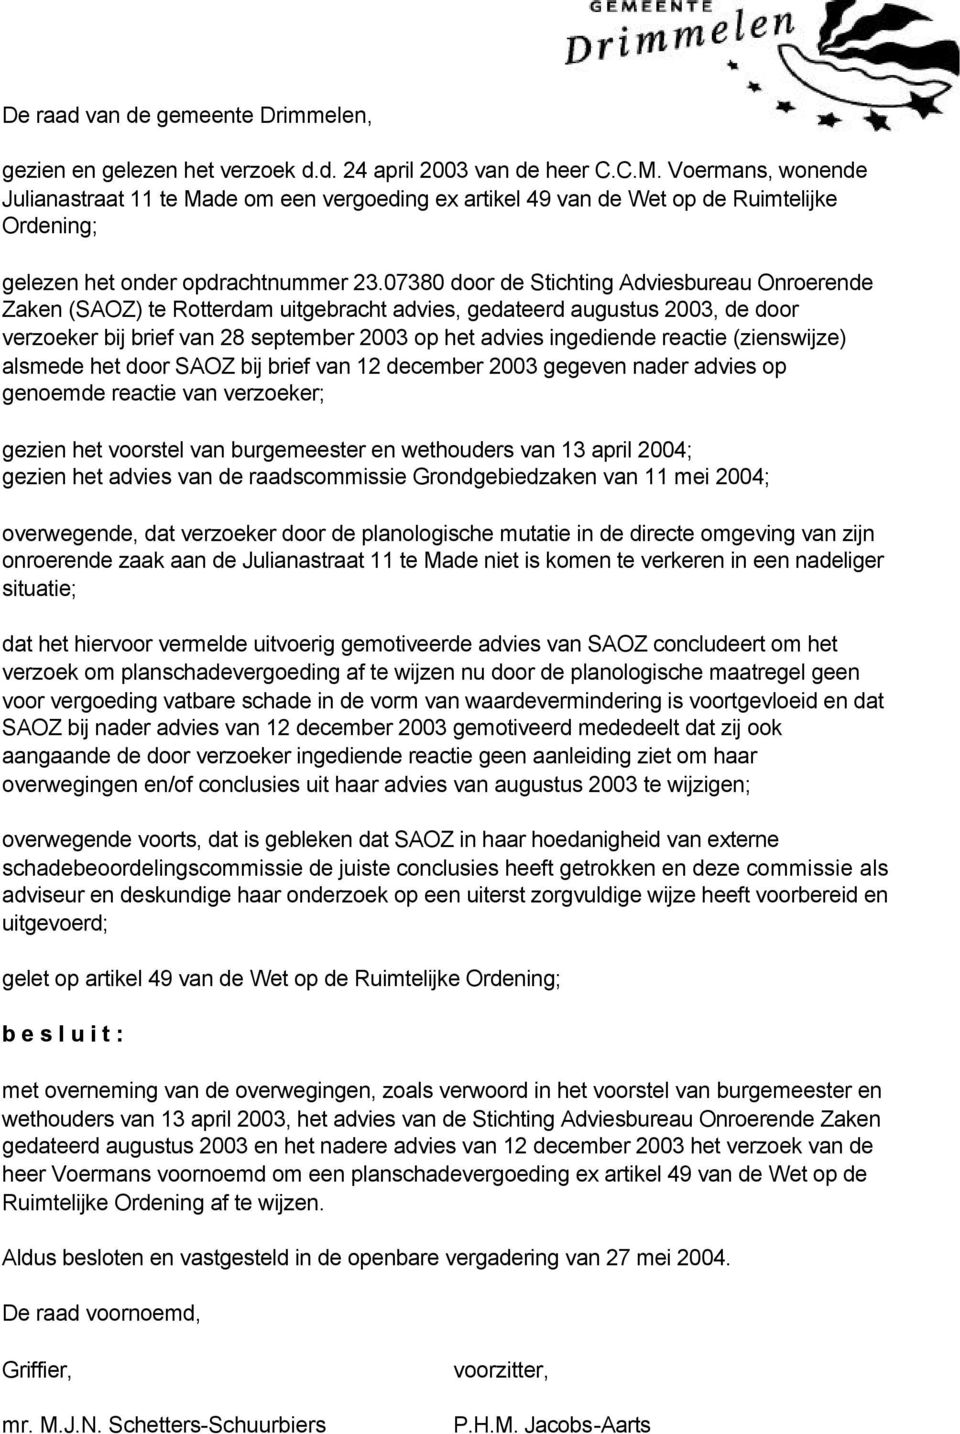 07380 door de Stichting Adviesbureau Onroerende Zaken (SAOZ) te Rotterdam uitgebracht advies, gedateerd augustus 2003, de door verzoeker bij brief van 28 september 2003 op het advies ingediende